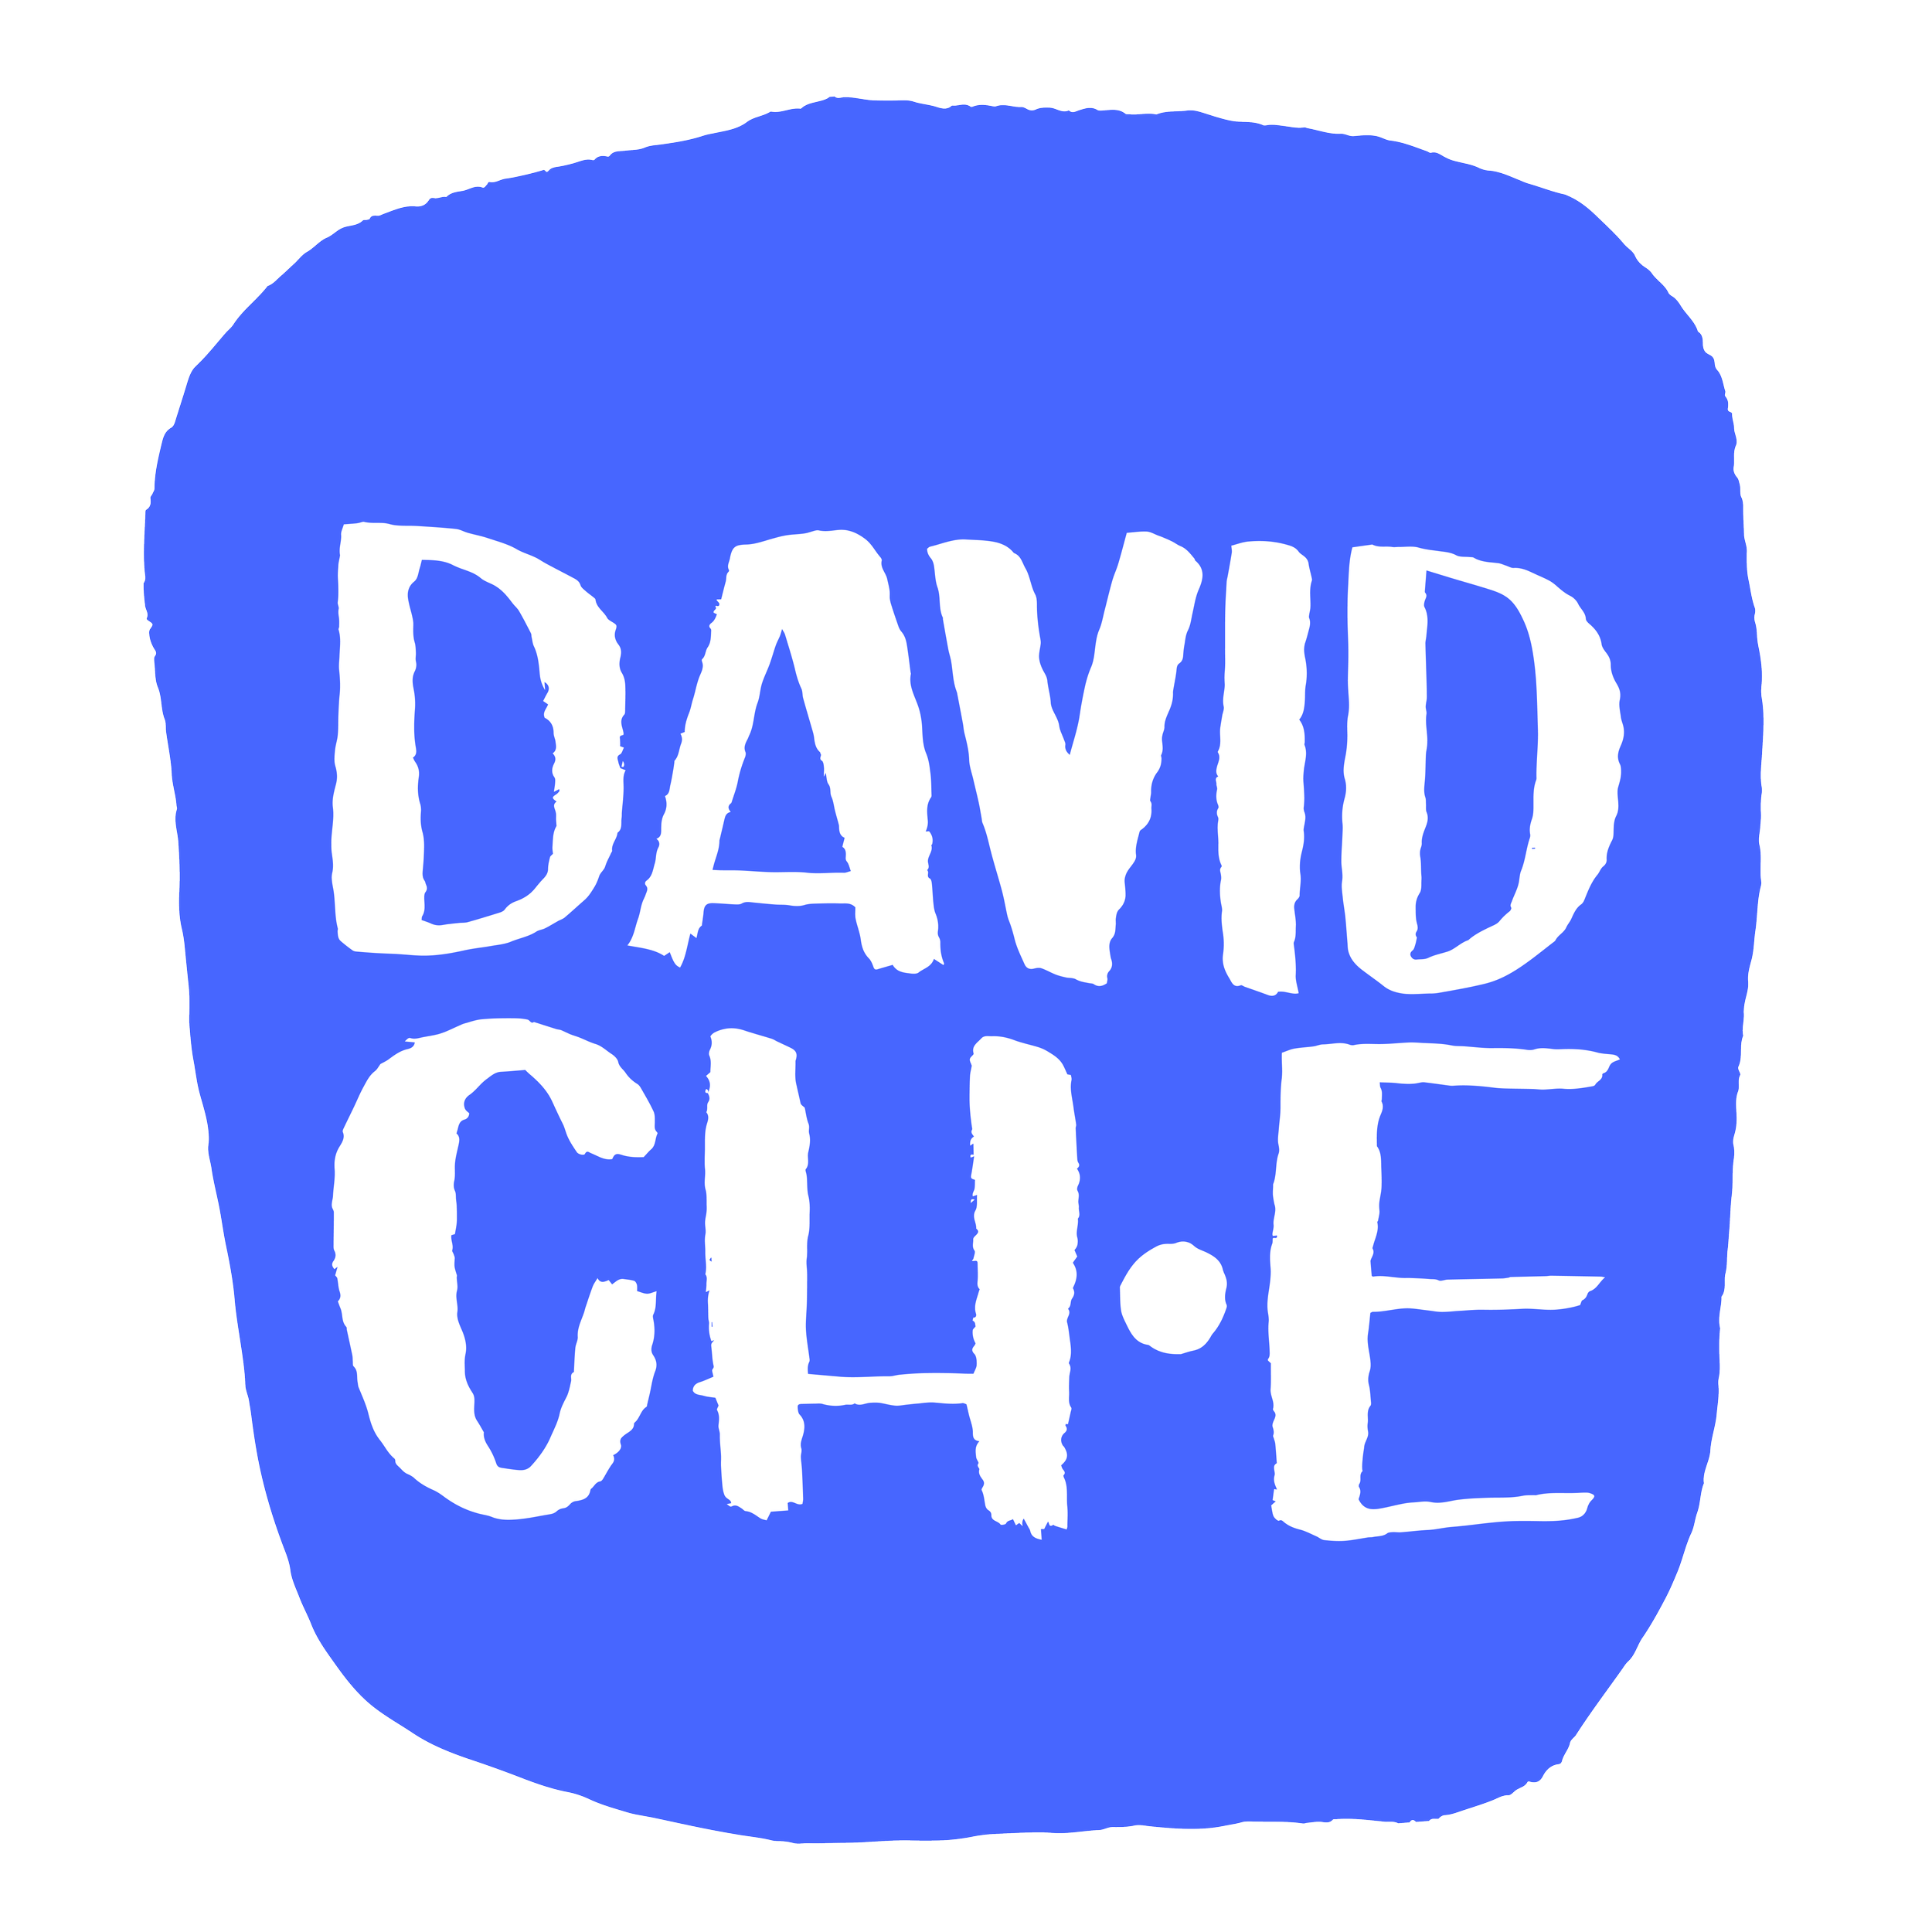 David M Choe